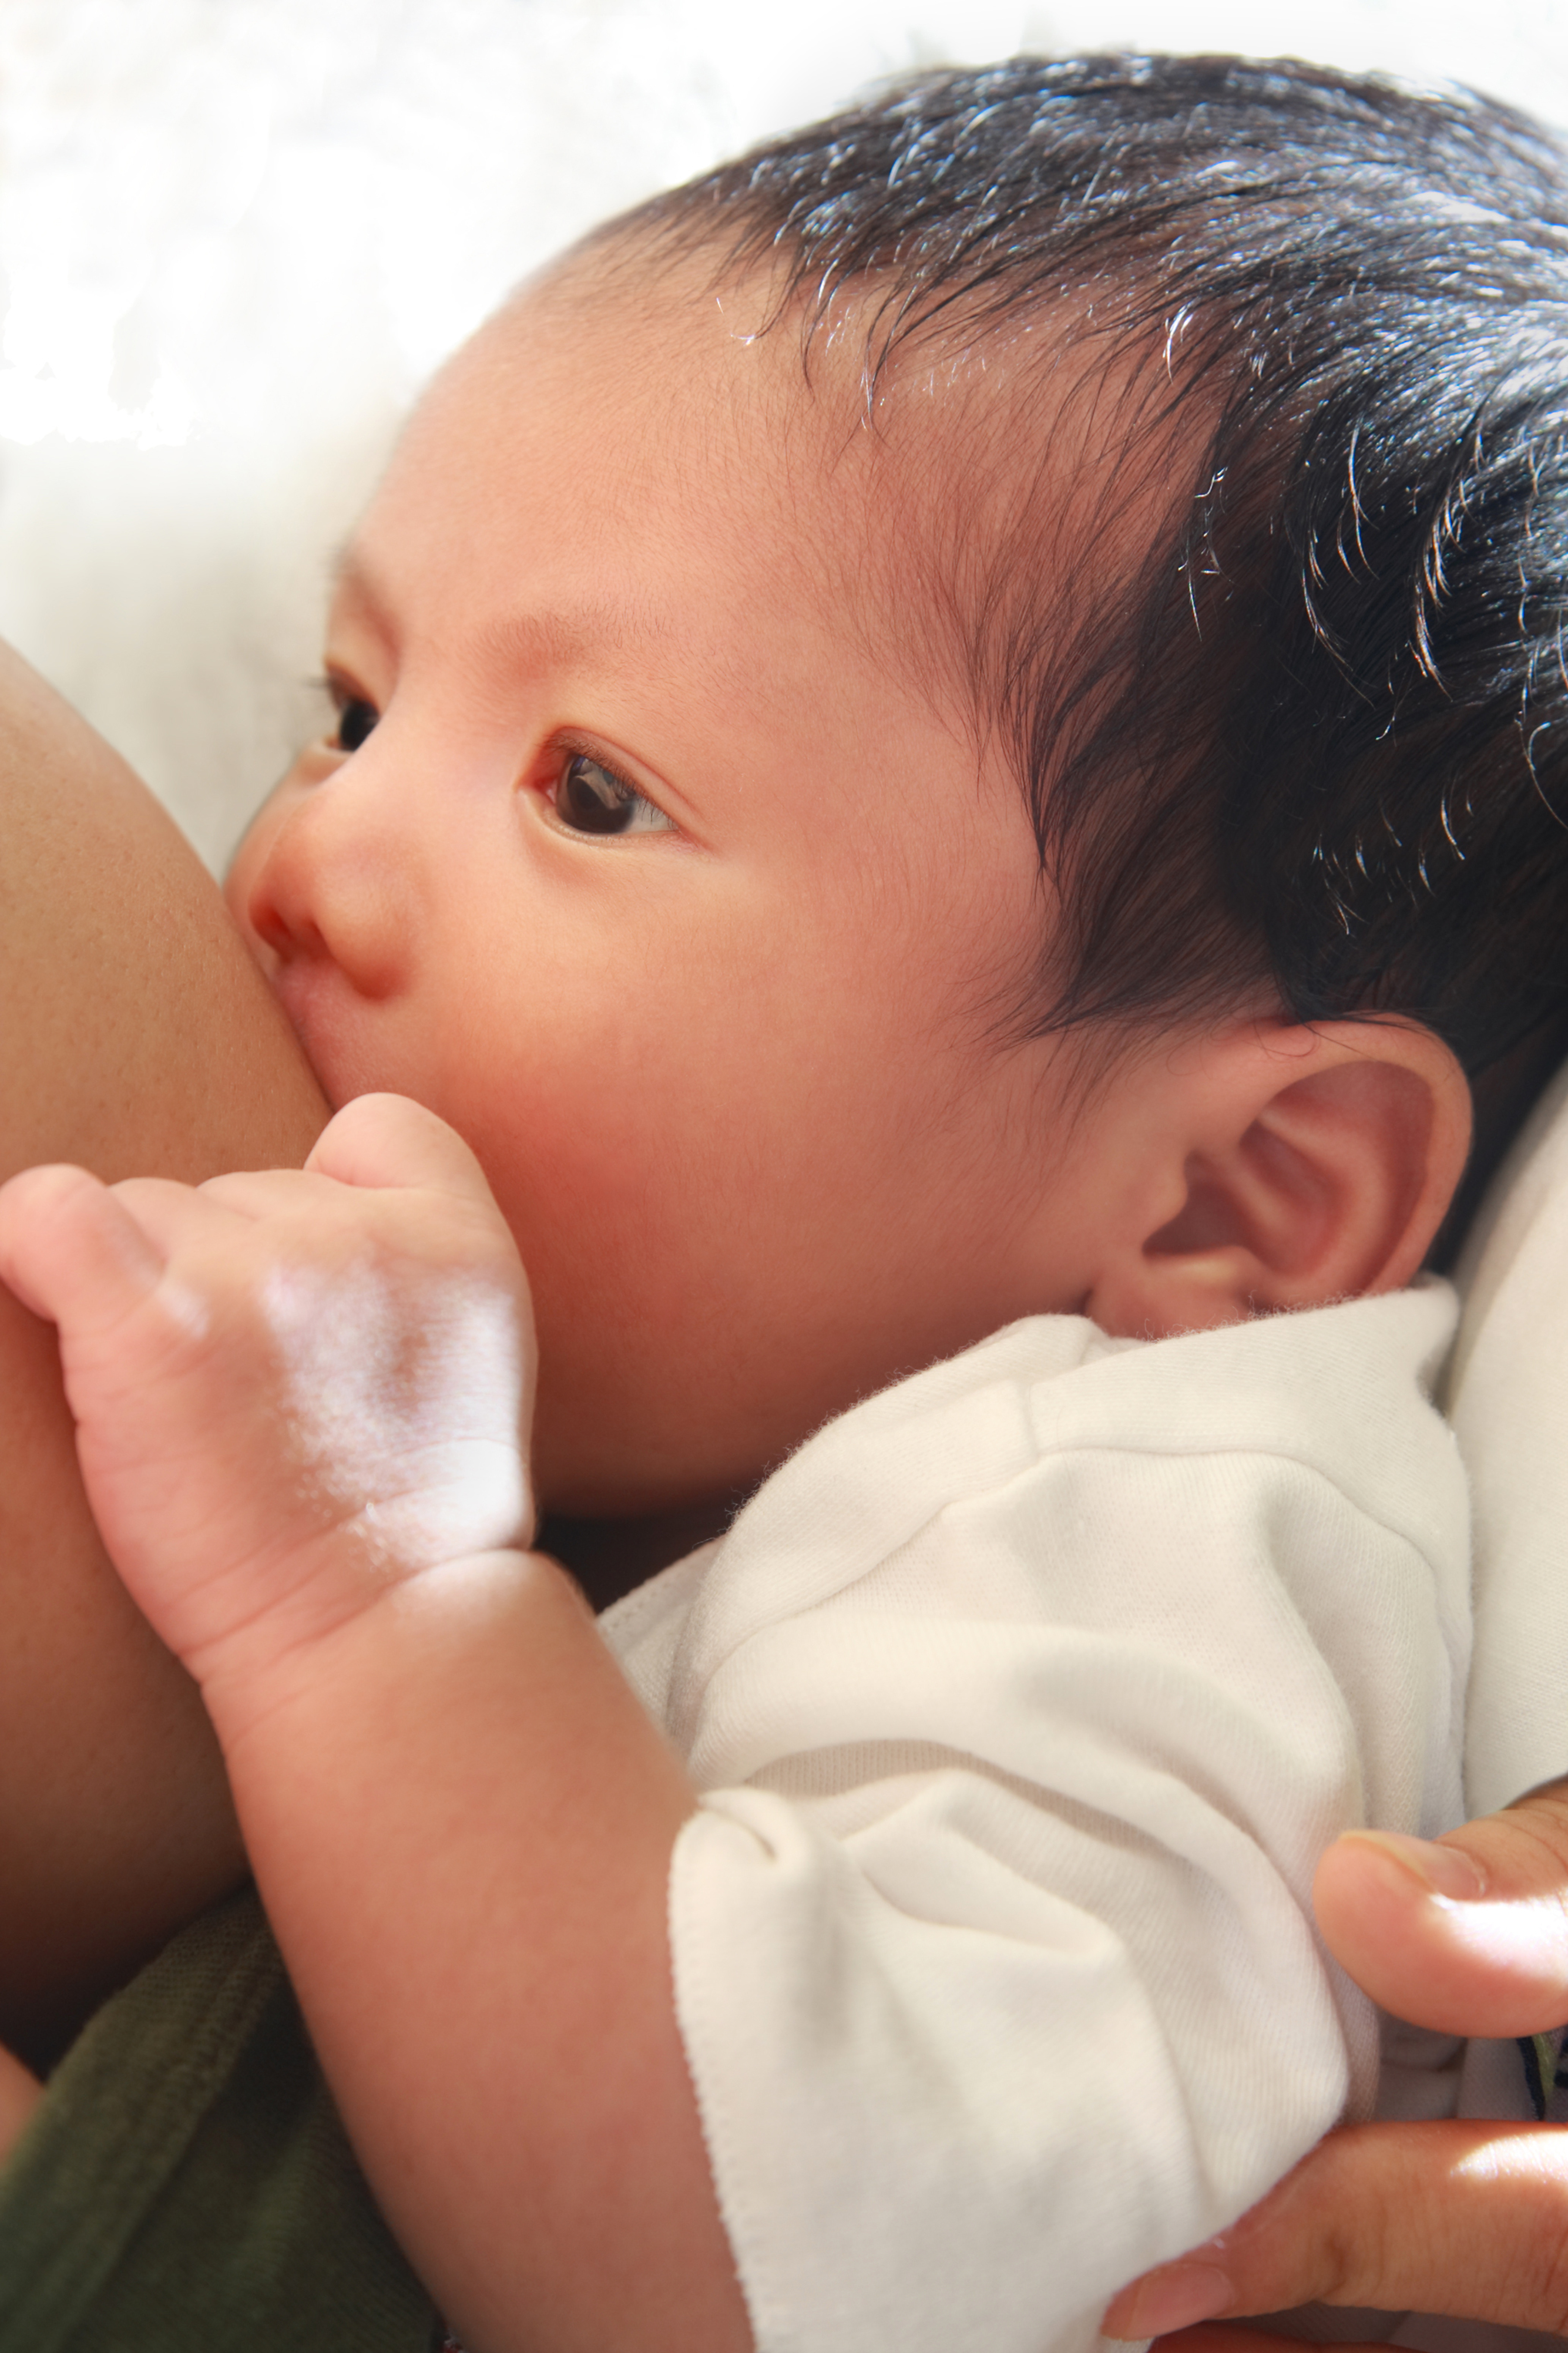 Sữa mẹ chính là nguồn kháng thể vô cùng quý giá giúp tăng cường đề kháng cho bé trong 6 tháng đầu